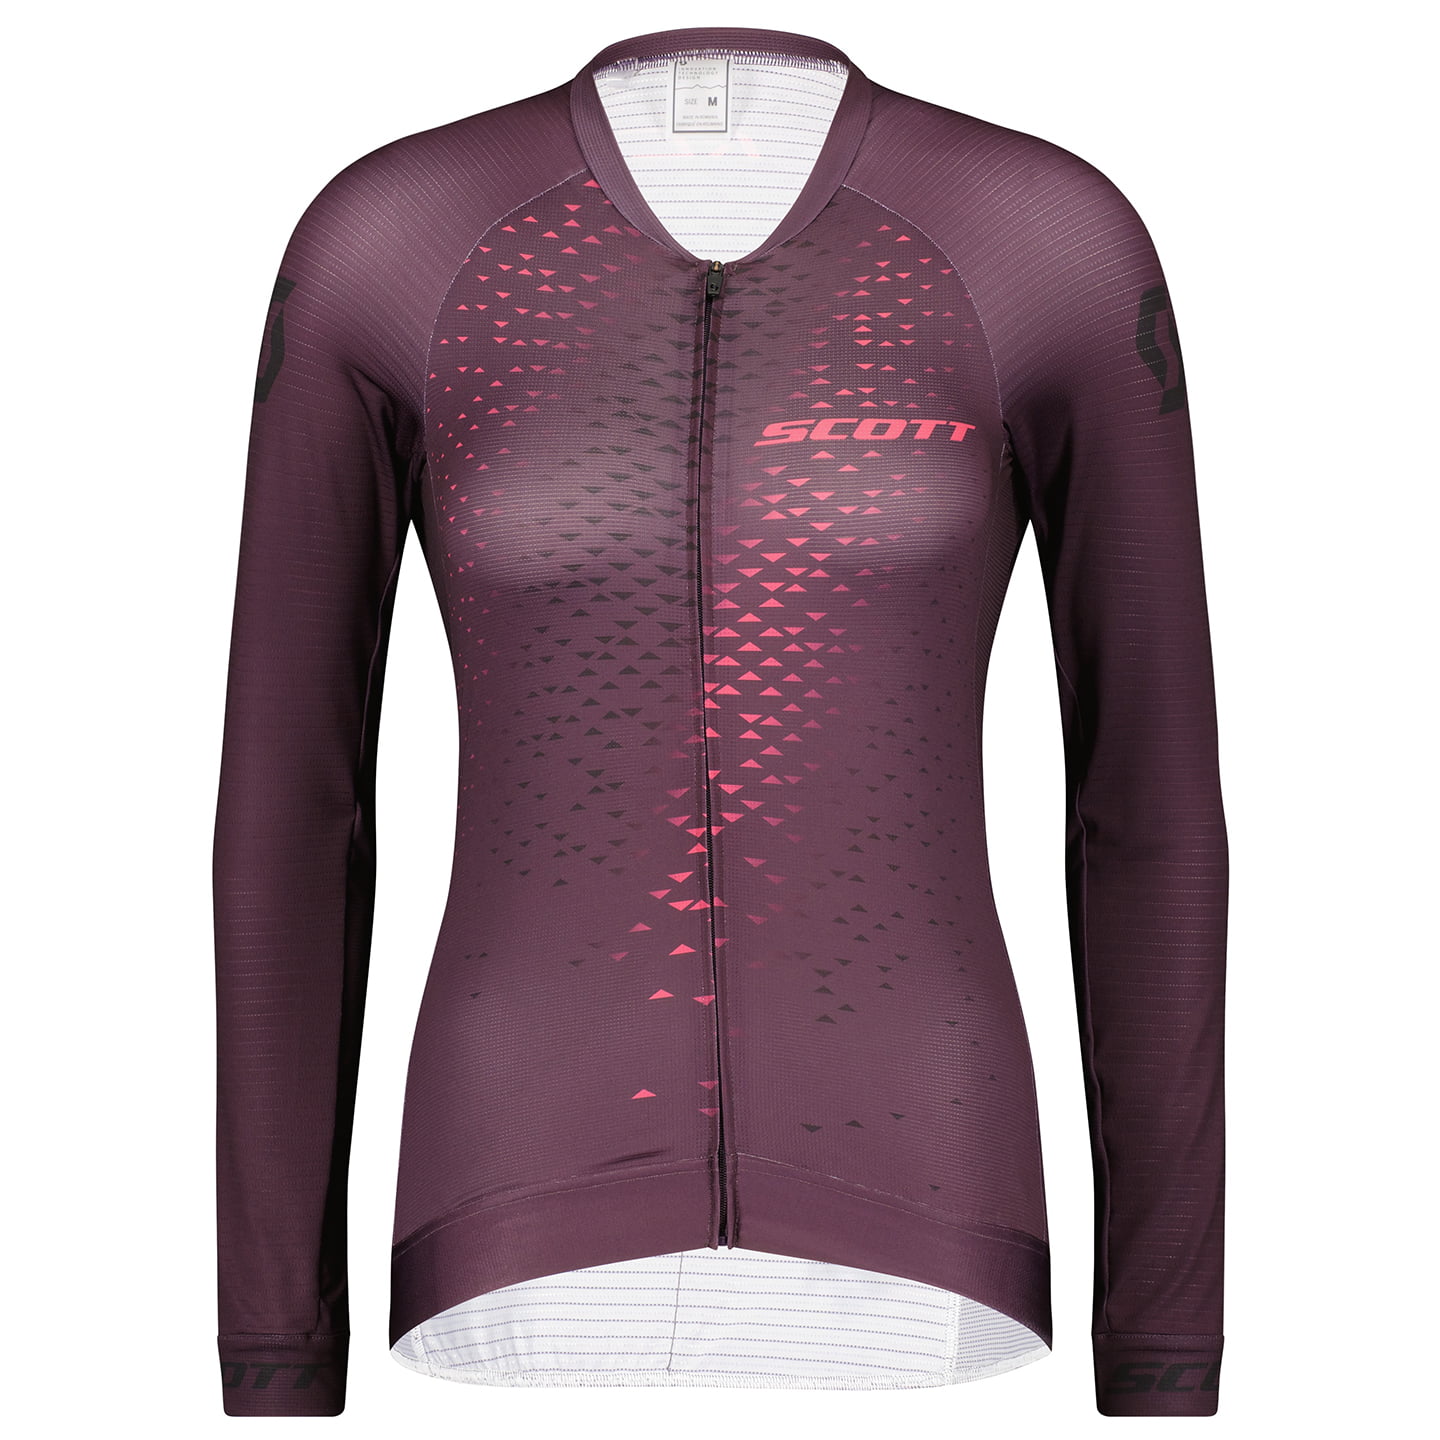 SCOTT RC Pro Women’s Long Sleeve Jersey Women’s Long Sleeve Jersey, size XL, Cycle jersey, Bike gear